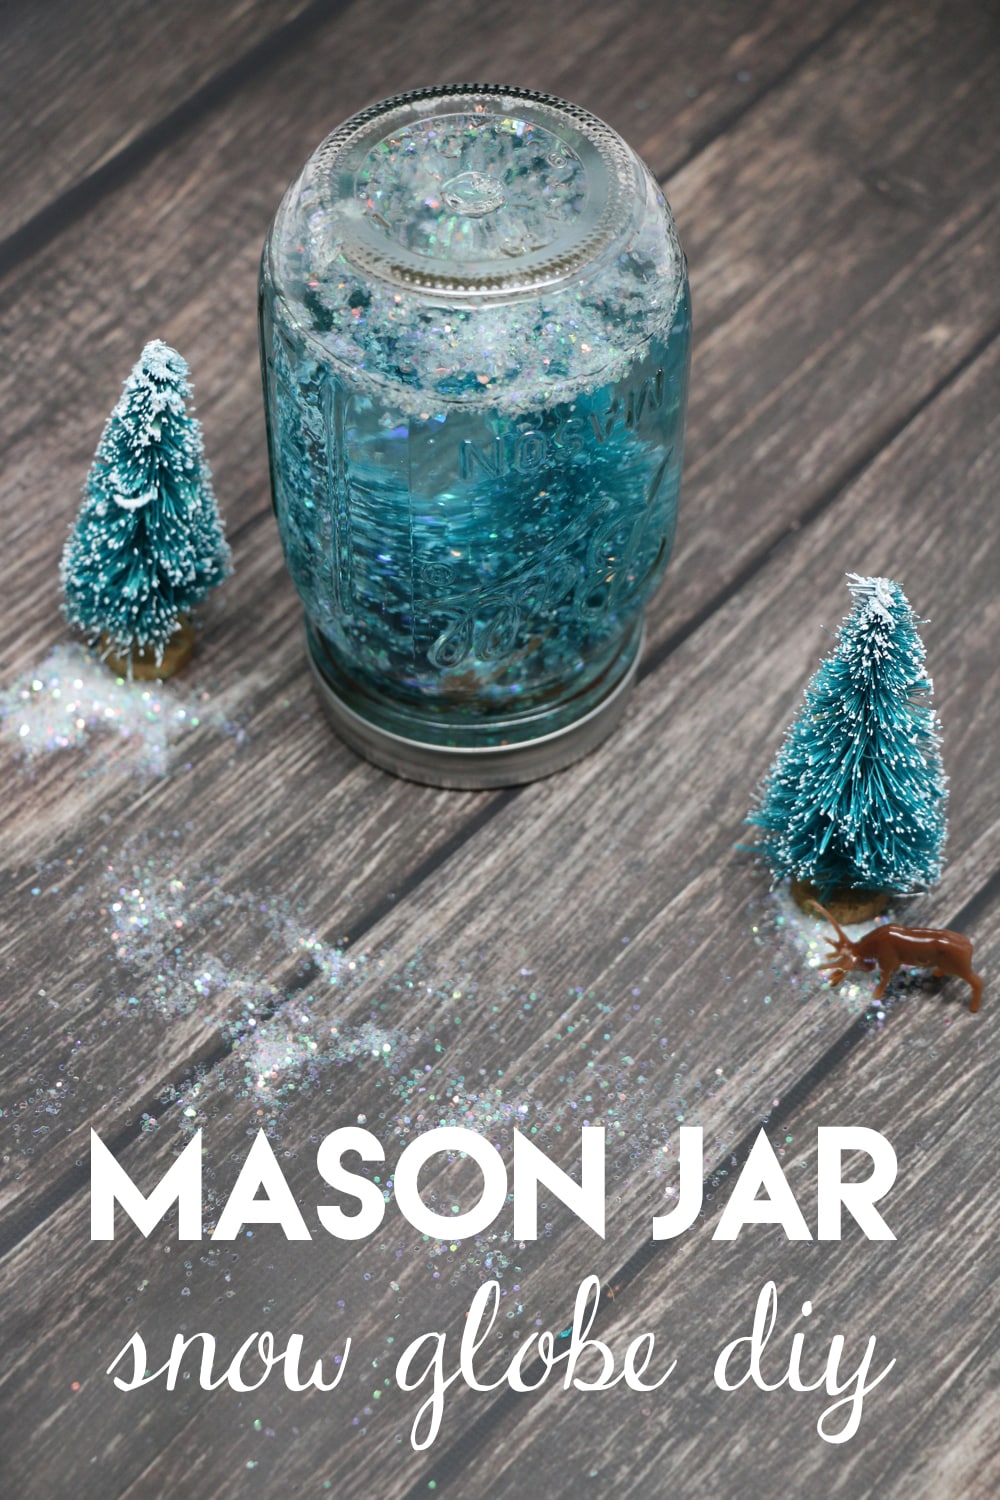 Mason Jar Snow Globe DIY